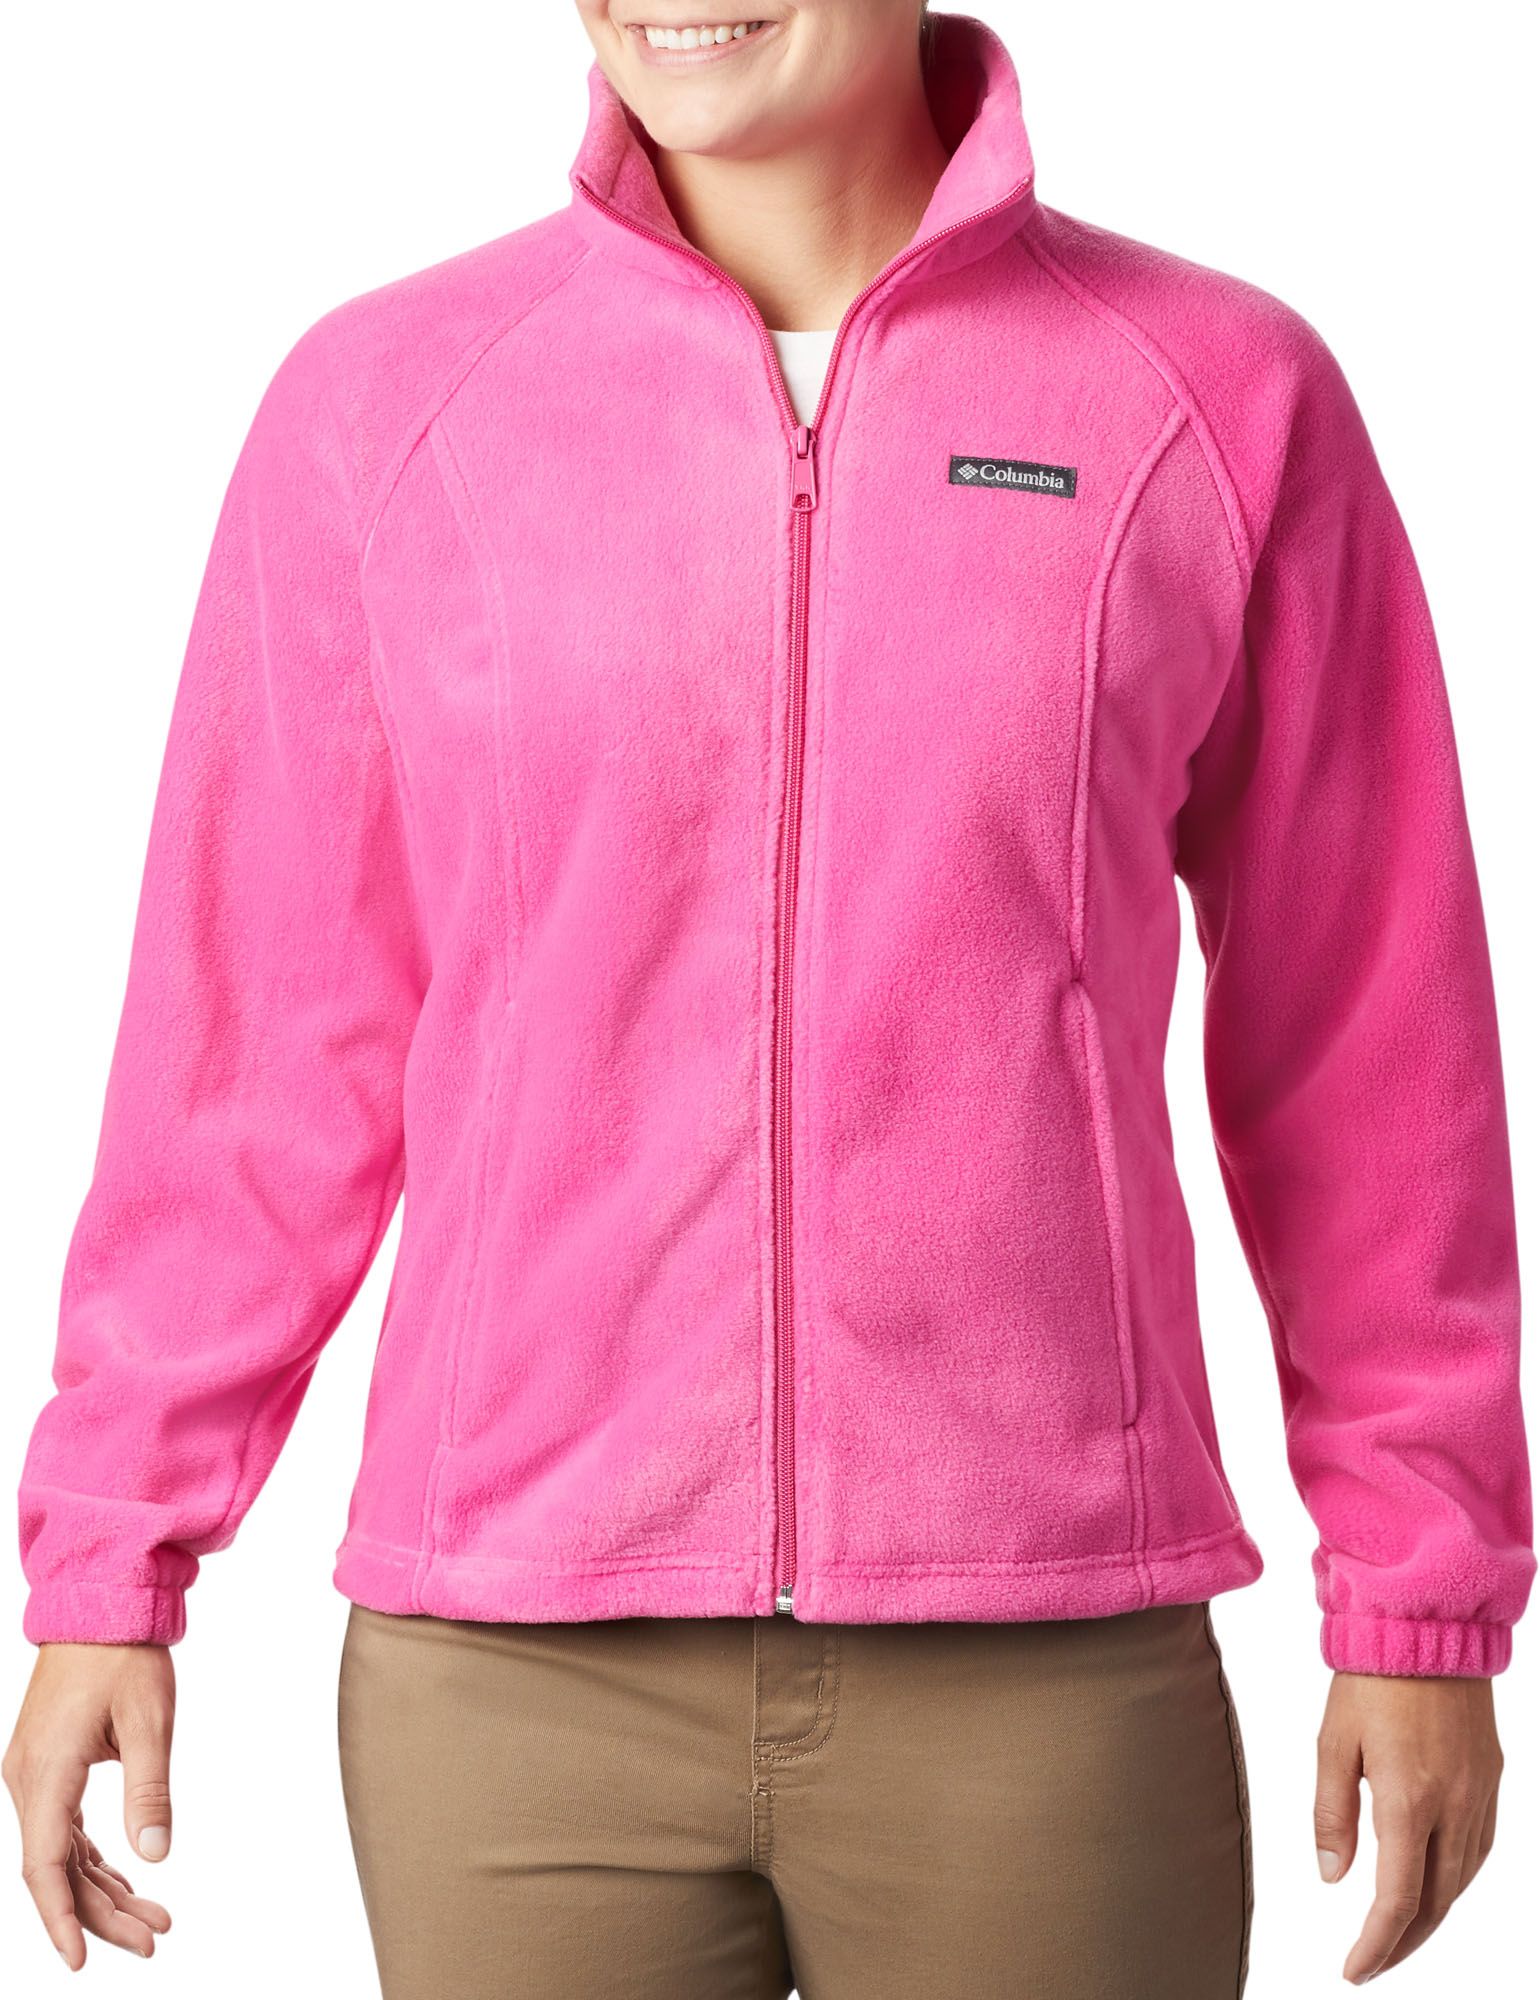 pink columbia jacket